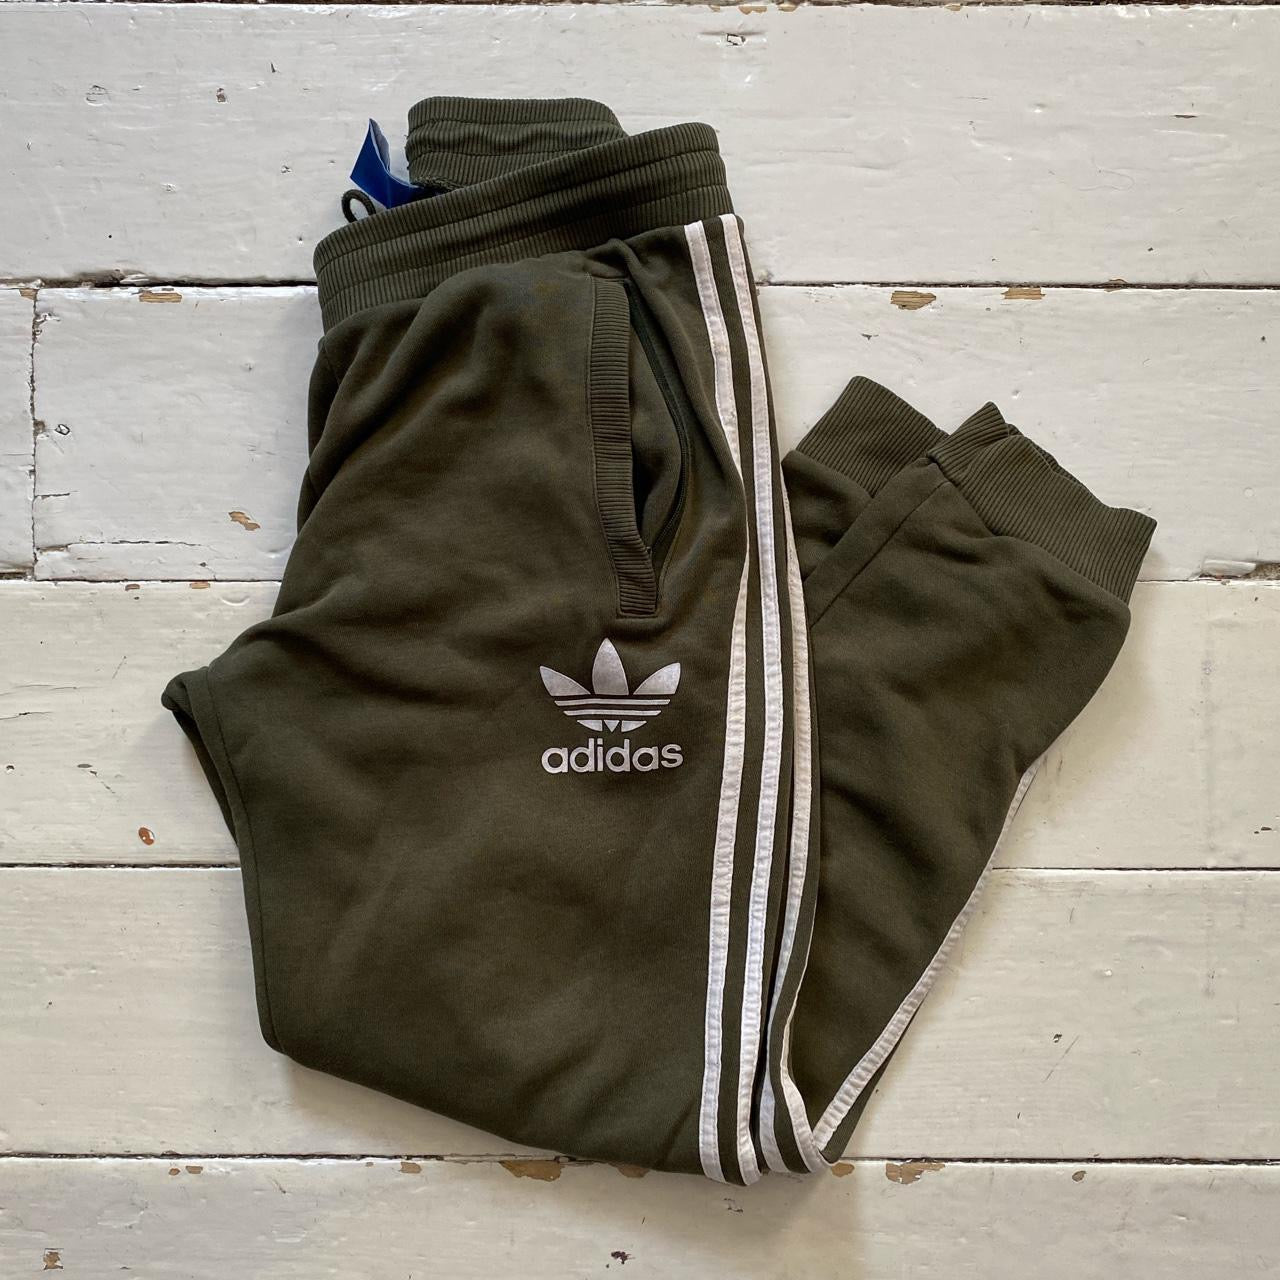 Adidas Originals Green Joggers (Medium)